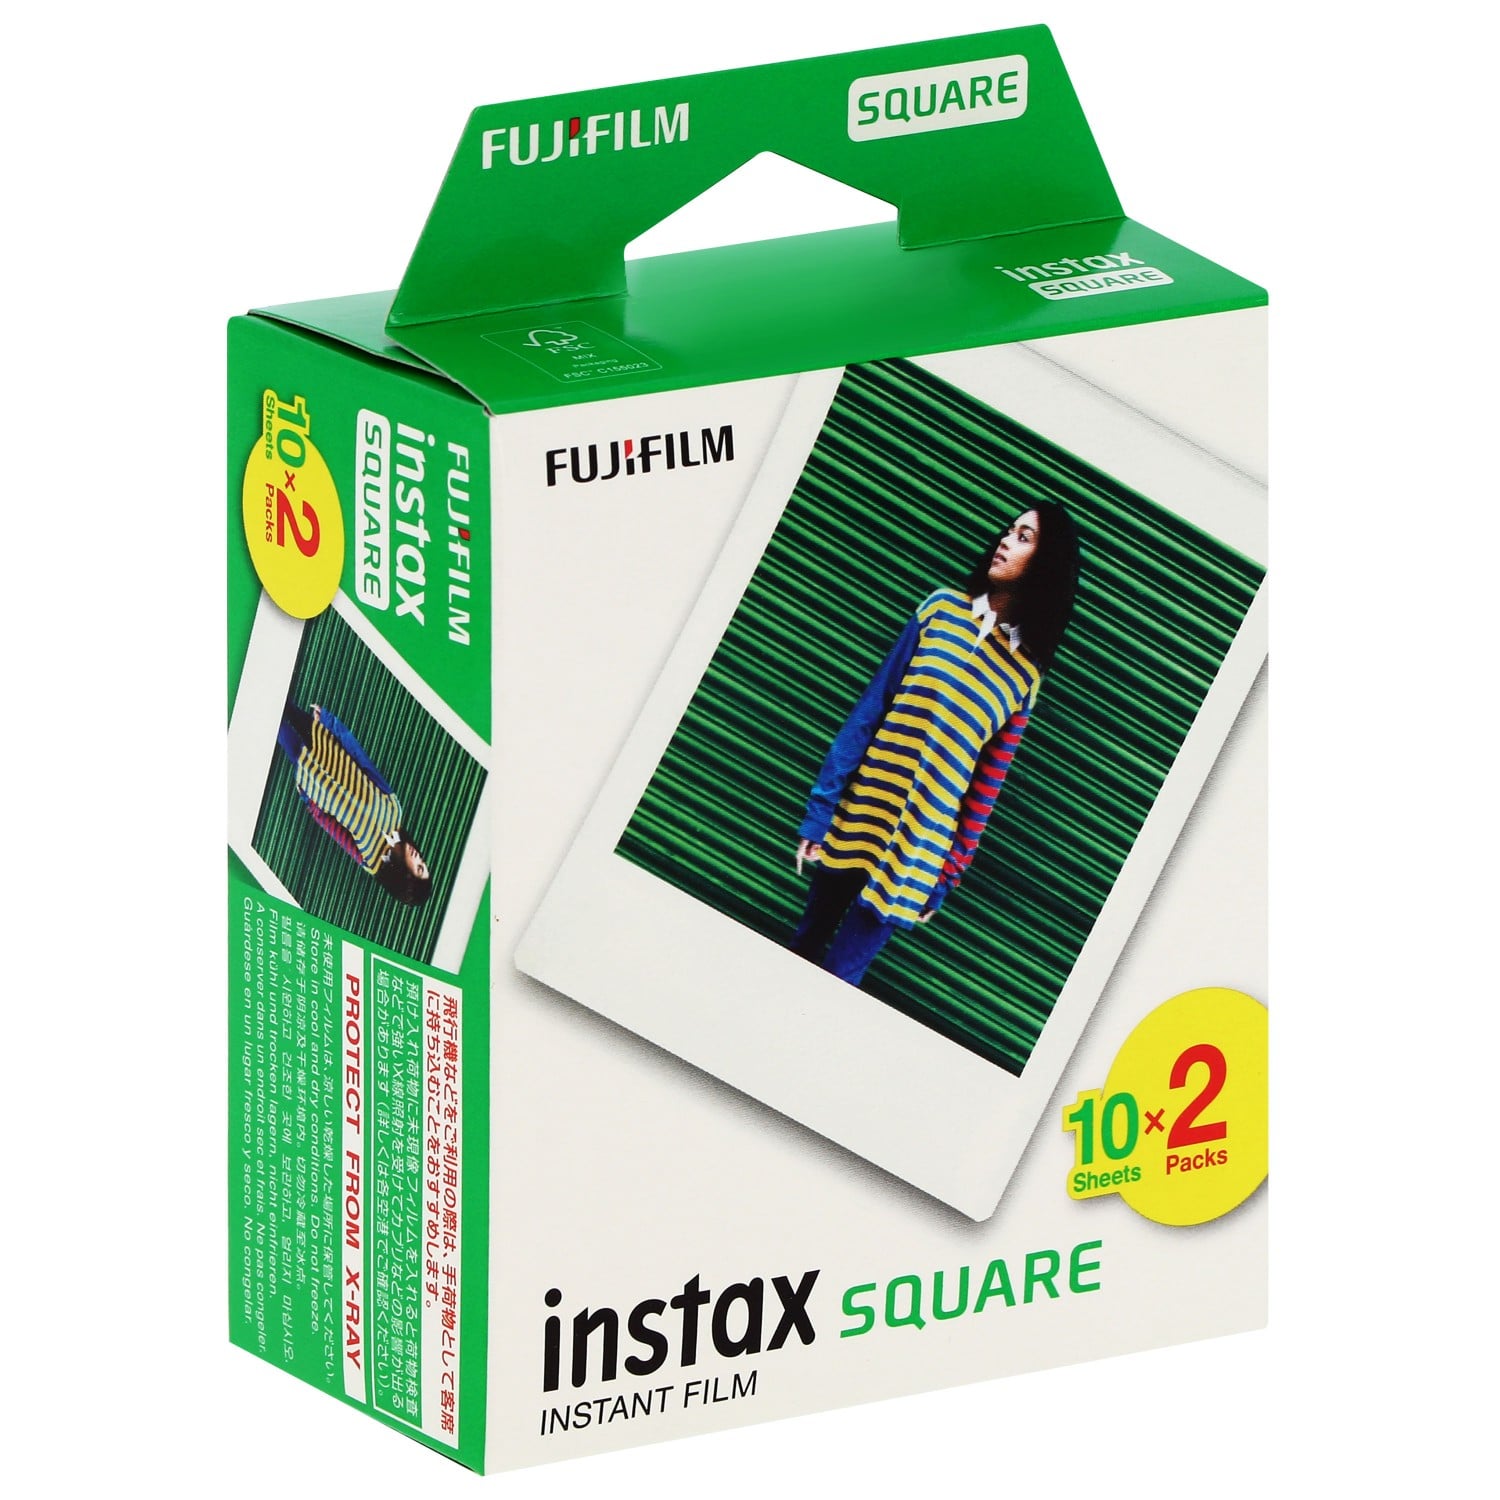 Fujifilm Instax Square film (20 feuilles) FujiFilm